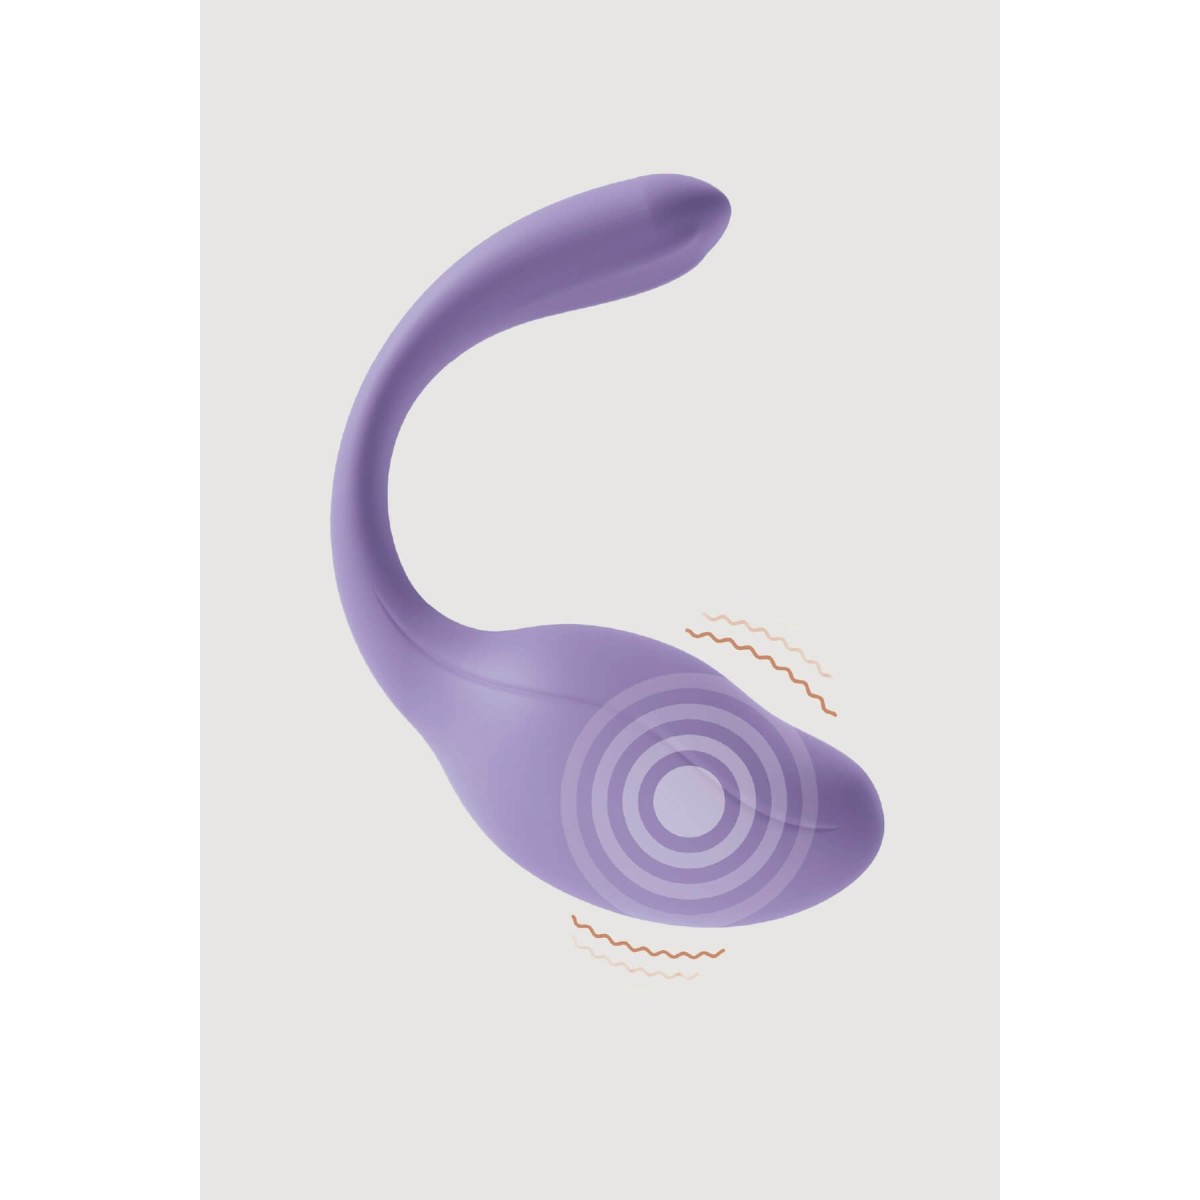 Ovetto vibrante stimolatore punto G e clitoride Smart Dream 3.0 + APP